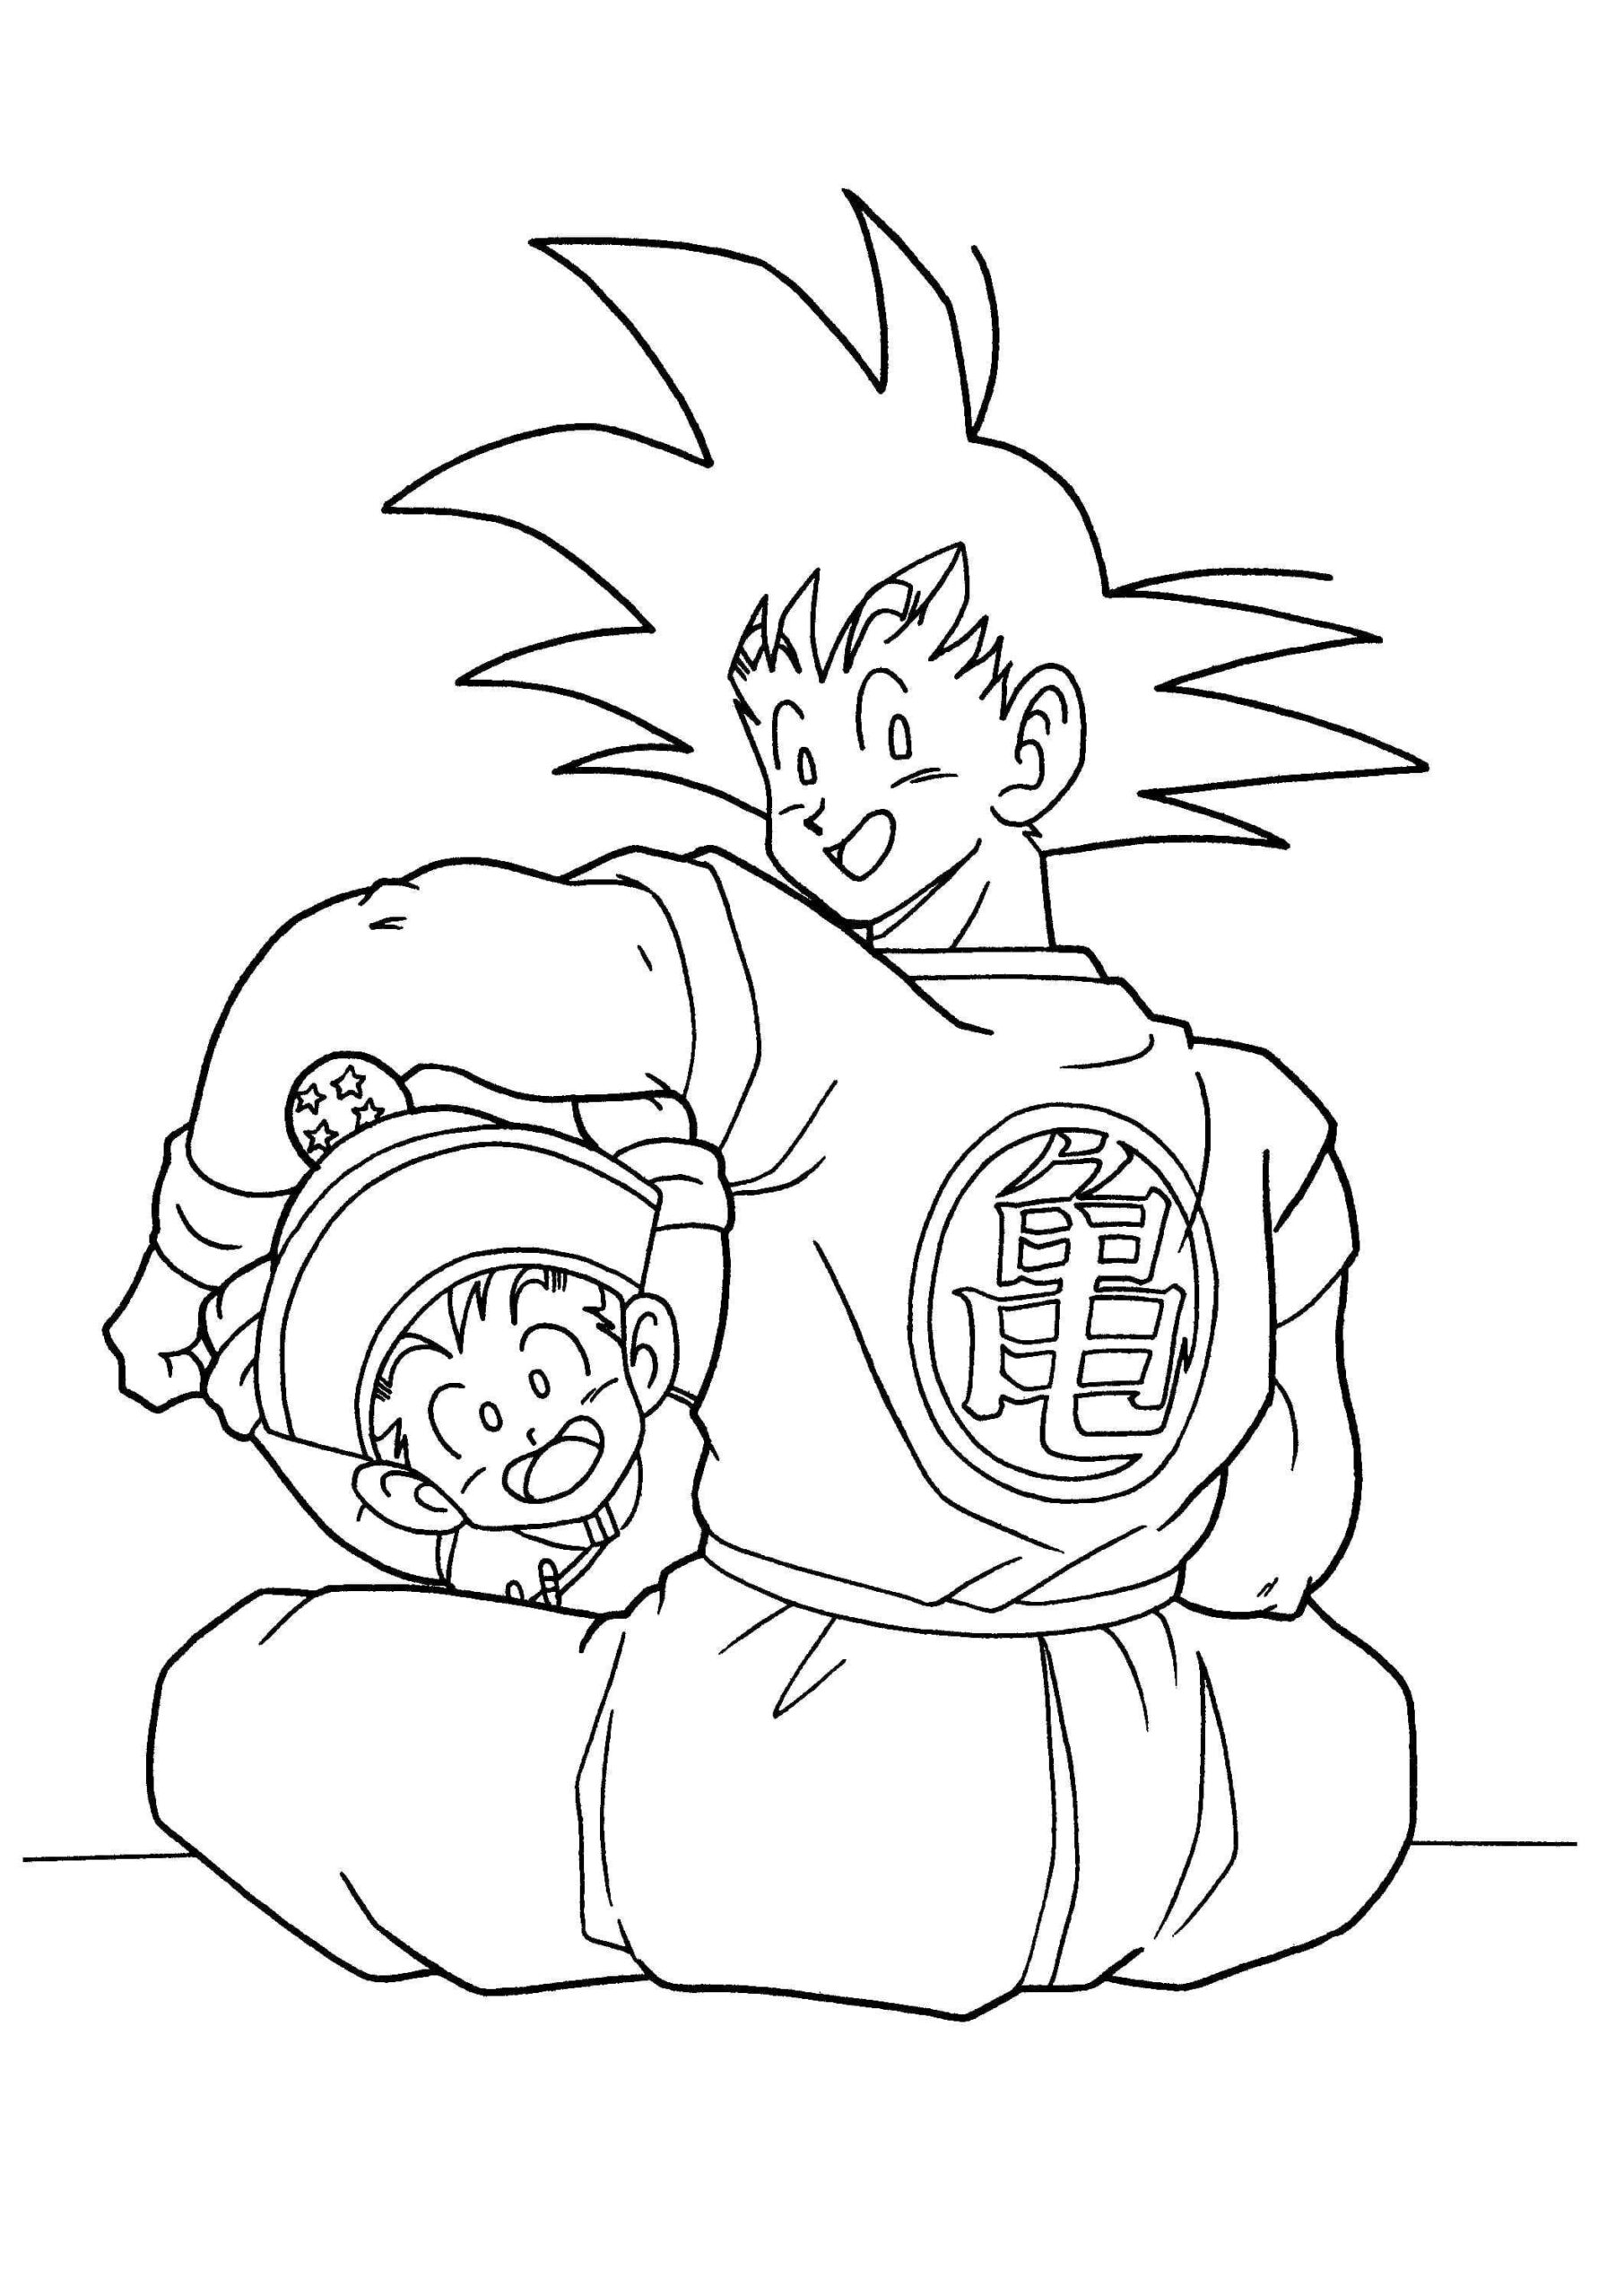 Zoon Goku speelt met zijn zoon